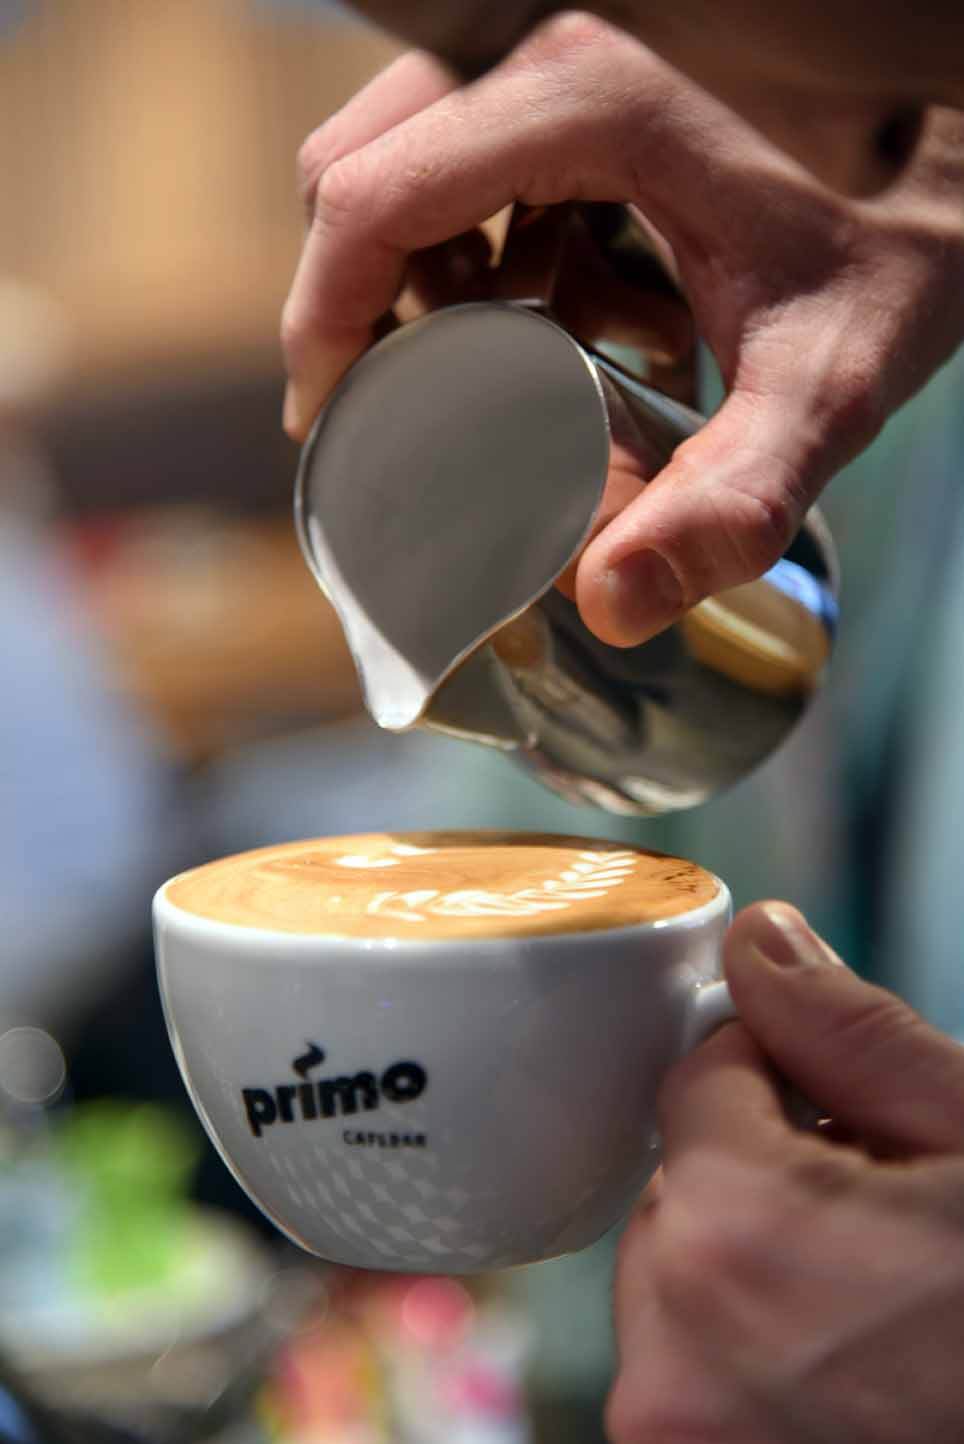 Durch Latte Art wird beim Eingießen der Milch in die Cappuccinoe Tasse in florales Muster auf die Schaumoberfläche gezeichnet